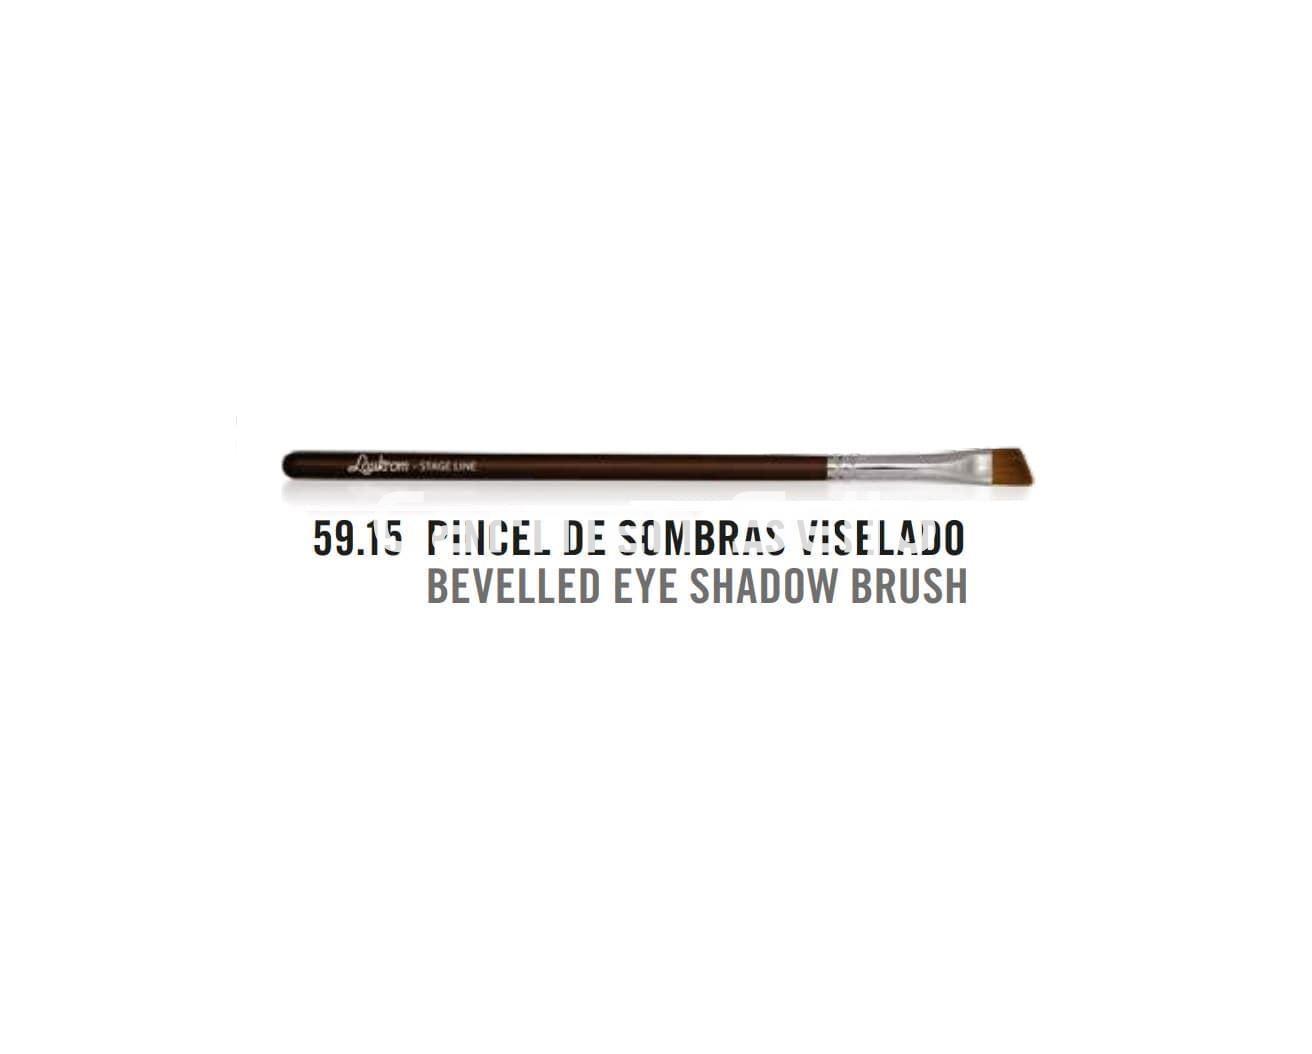 Stage Line Pincel de Sombras Biselado nº 59.15 Laukrom - Imagen 2